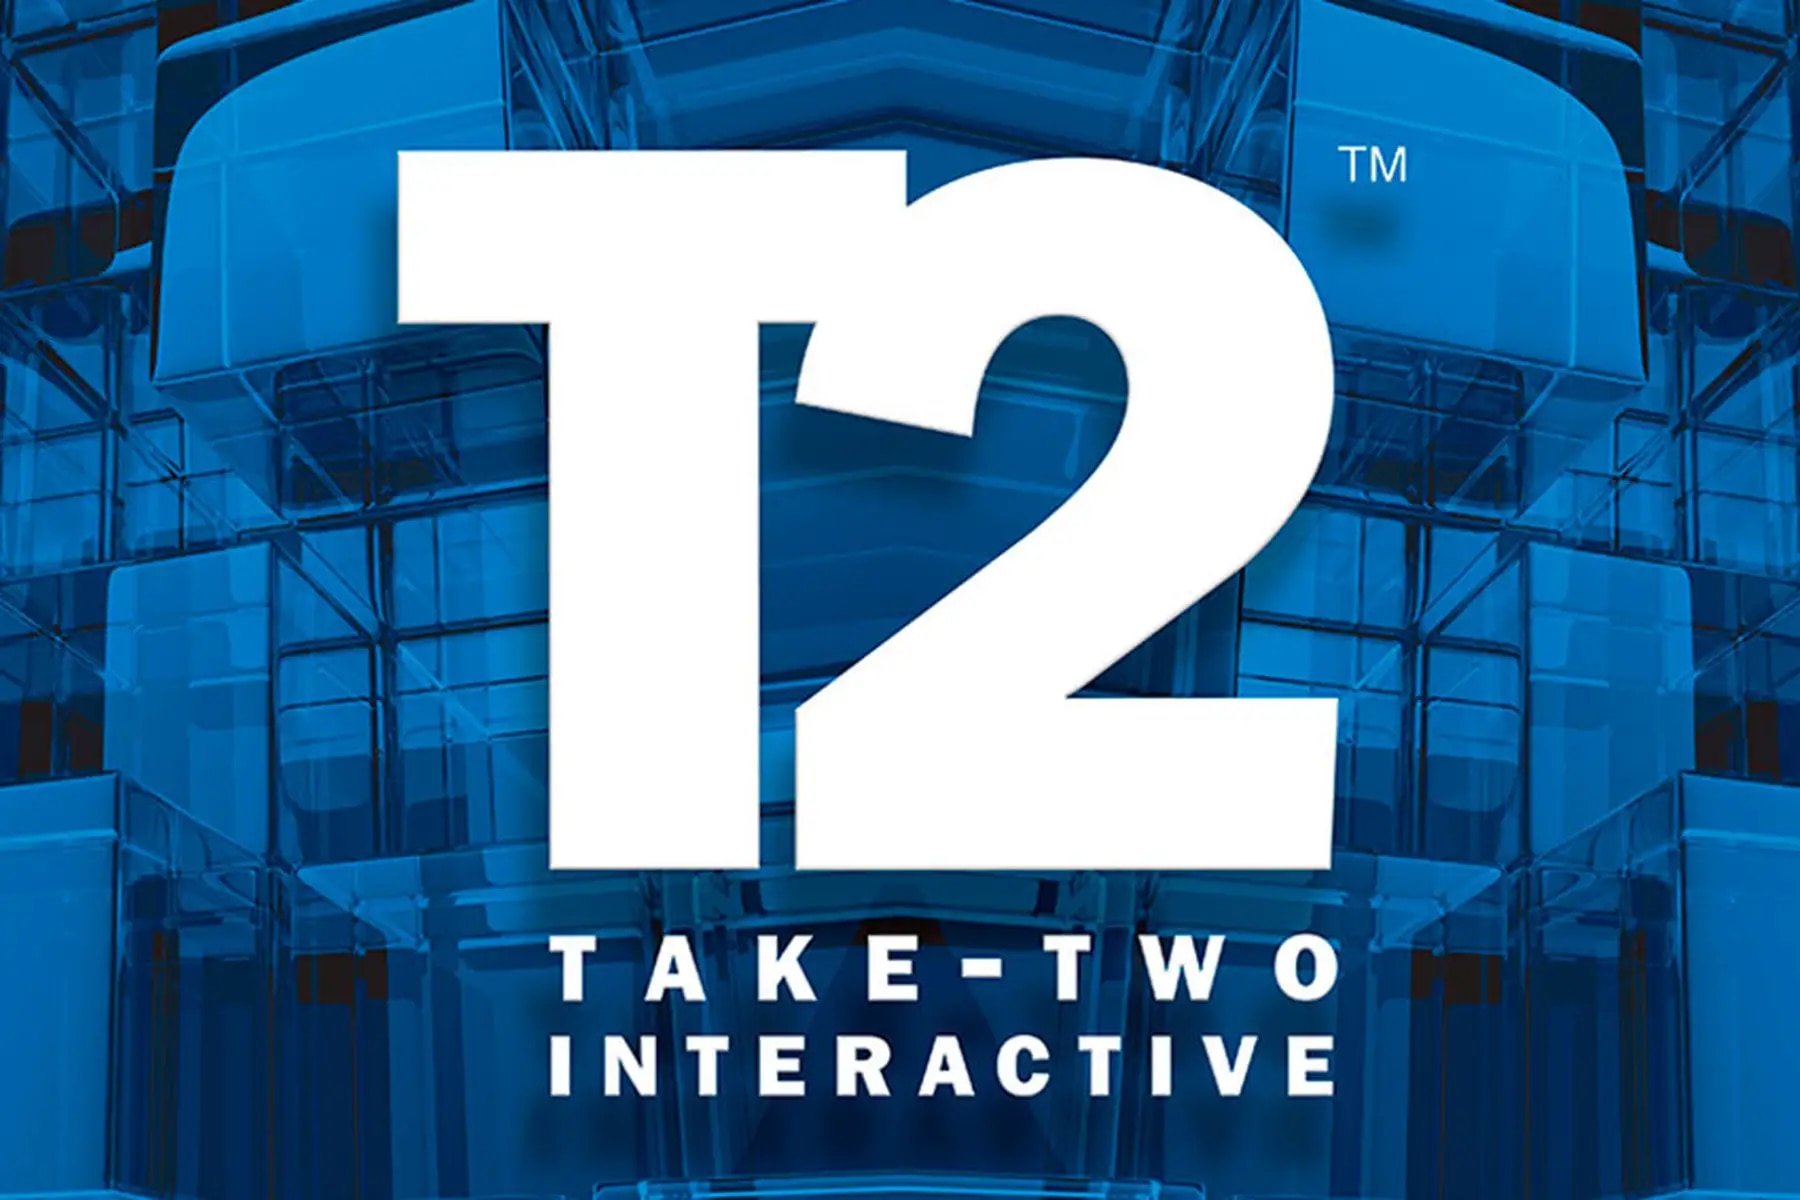 Logo firmy Take-Two Interactive z dużymi literami "T2" na niebieskim tle z kształtami przypominającymi szklane bloki.